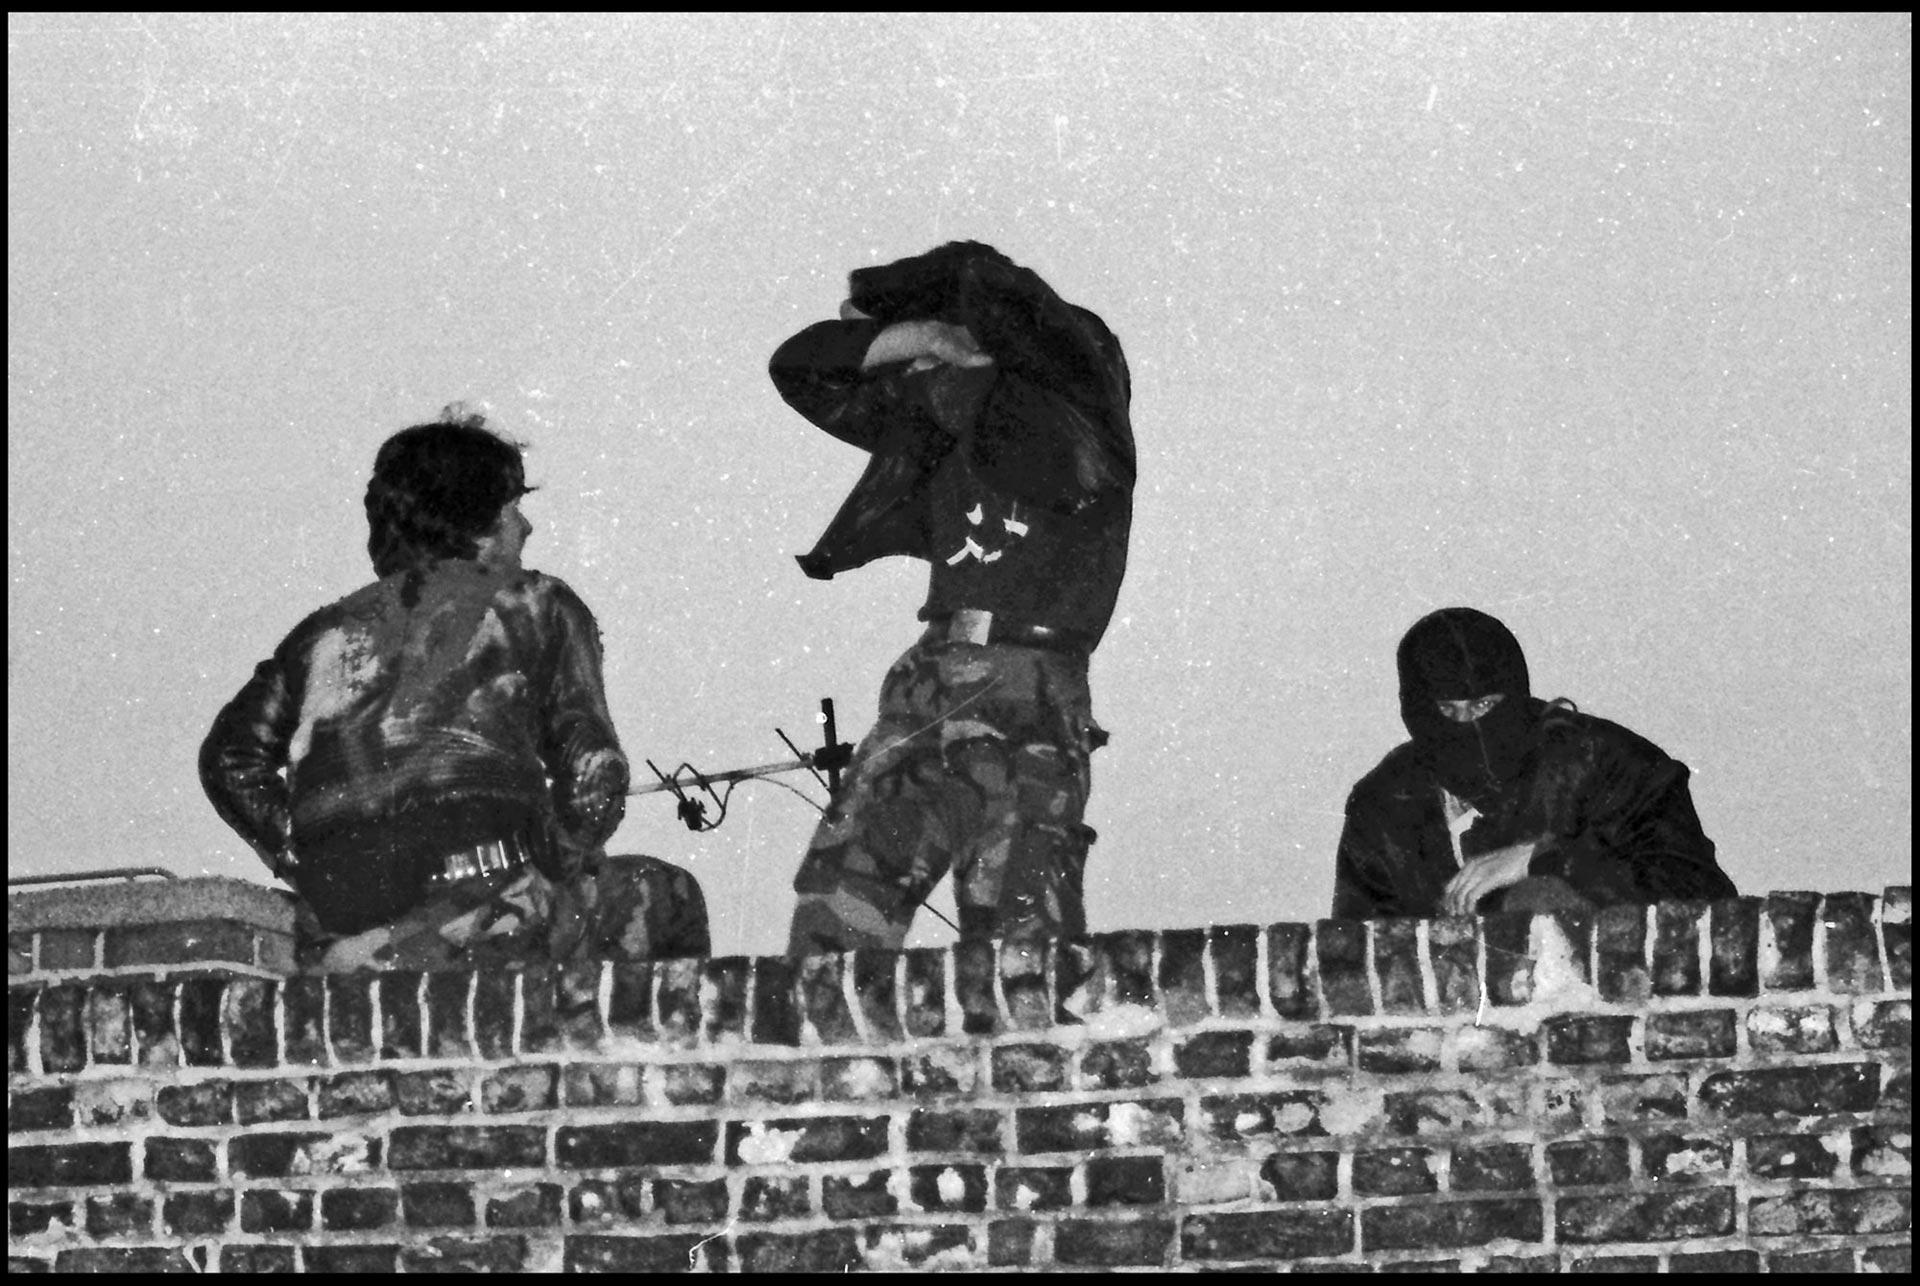 Um auf Überfälle von Neonazis vorberietet zu sein, wurden Dachwachen eingerichtet, die in manchen Zeiten permanent die Straßen beobachteten. Rigaer Straße 80, 1990. Foto: Marko Krojač